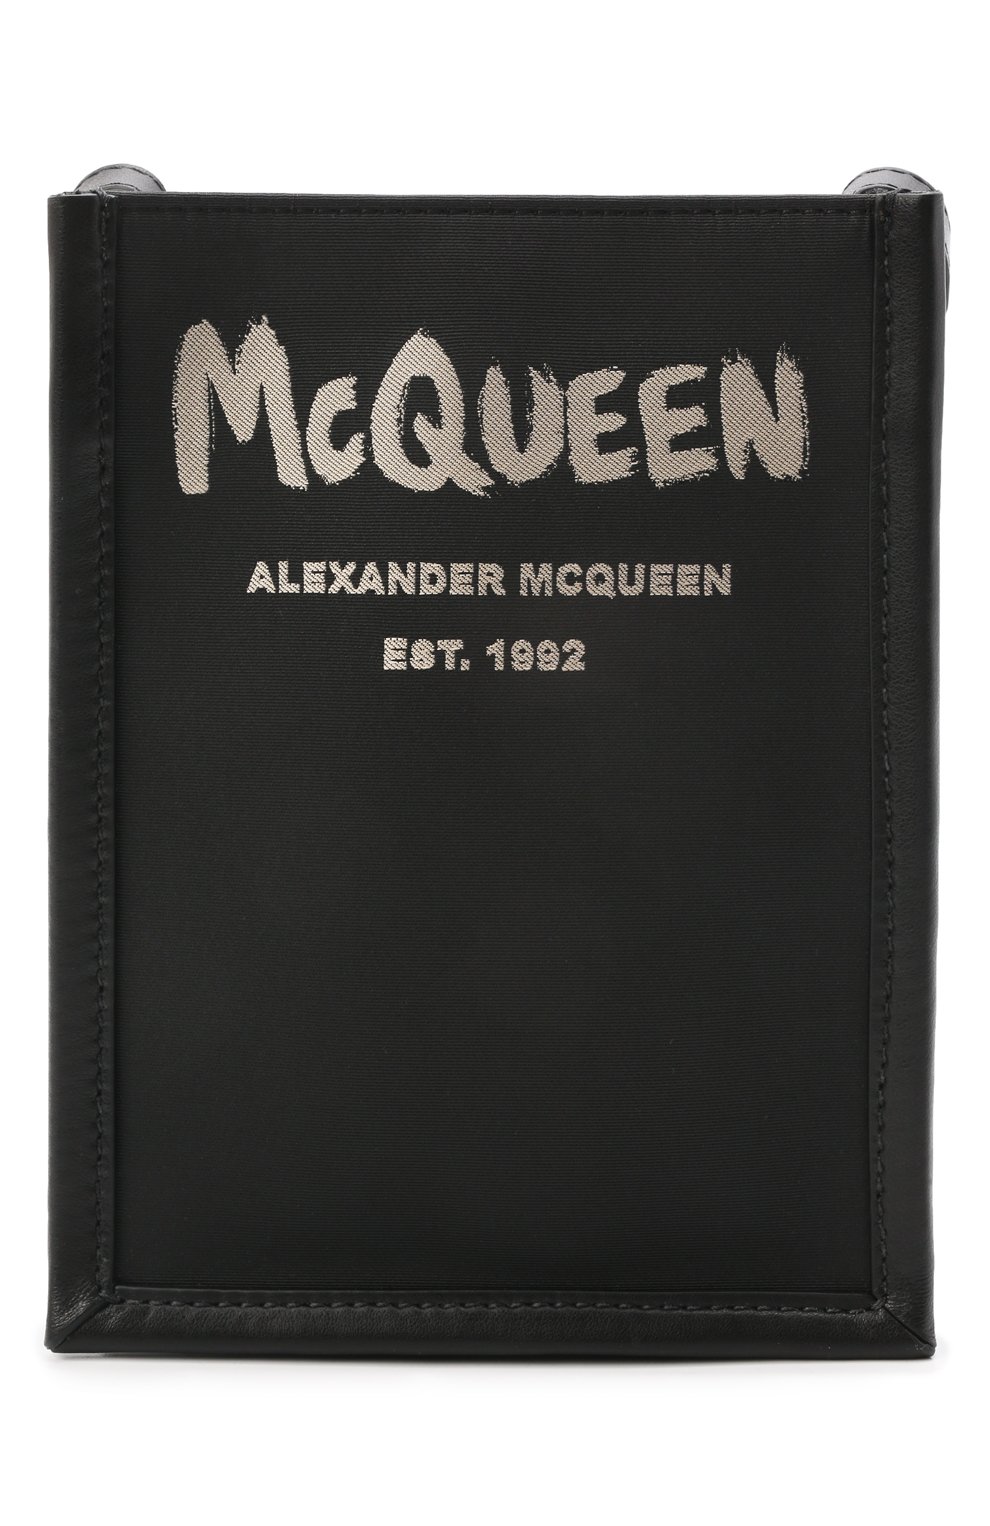 Сумки-мессенджеры Alexander McQueen, Комбинированная сумка Edge Mini Alexander McQueen, Италия, Чёрный, Текстиль: 100%; Отделка-кожа: 100%;, 12453917  - купить